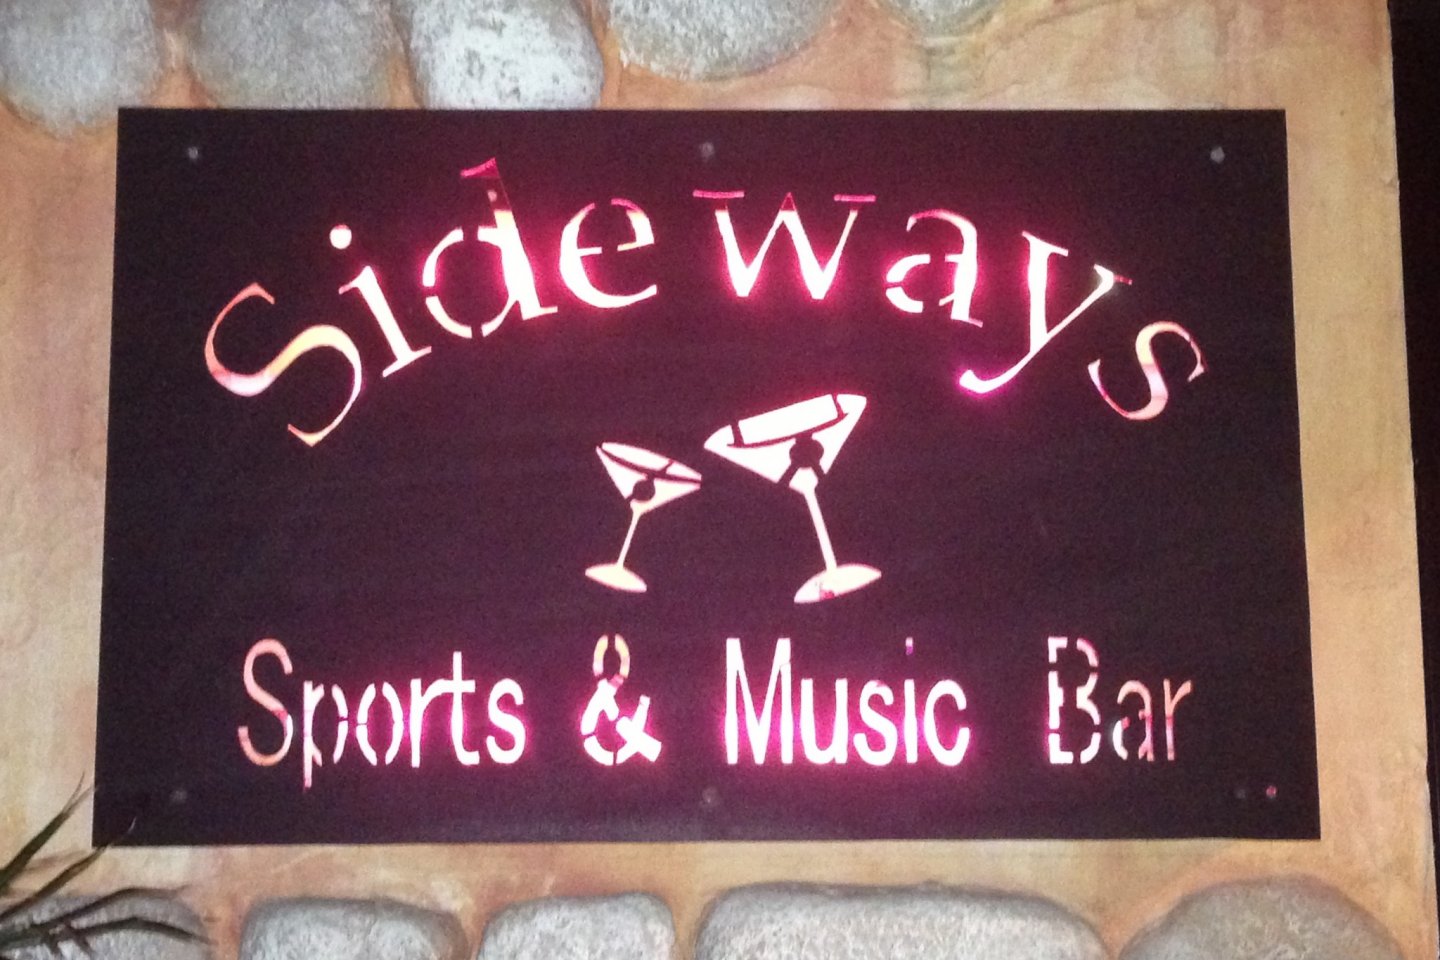 Sideways is a bar with a full restaurant menu